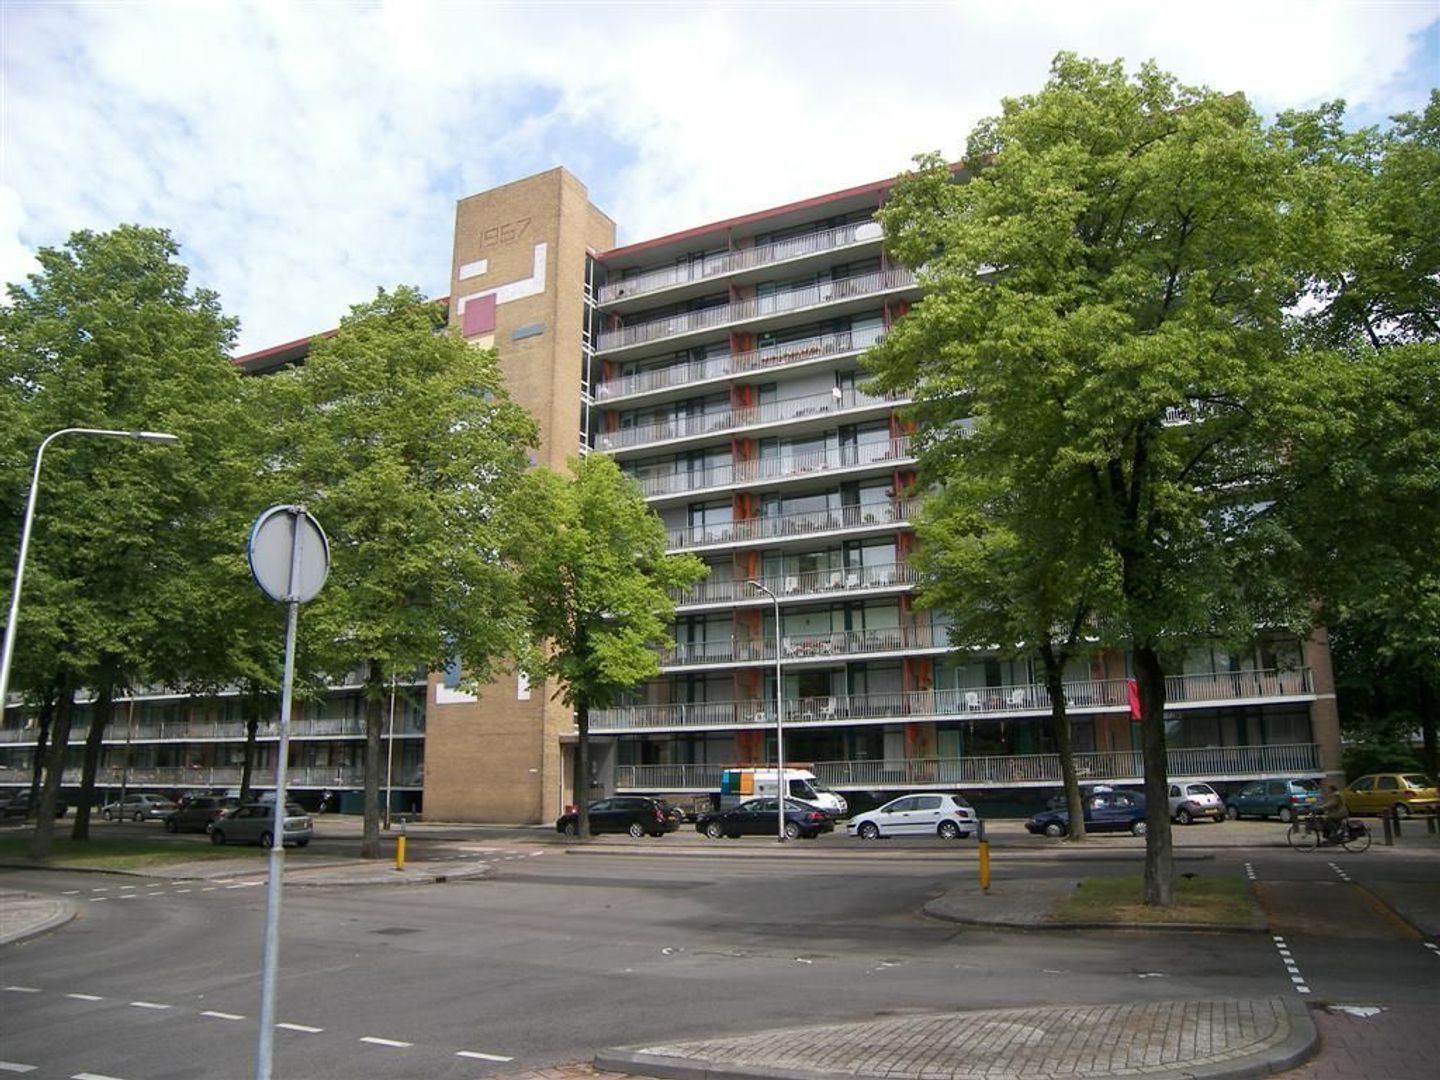 Bekijk for 1/1 van apartment in Tilburg